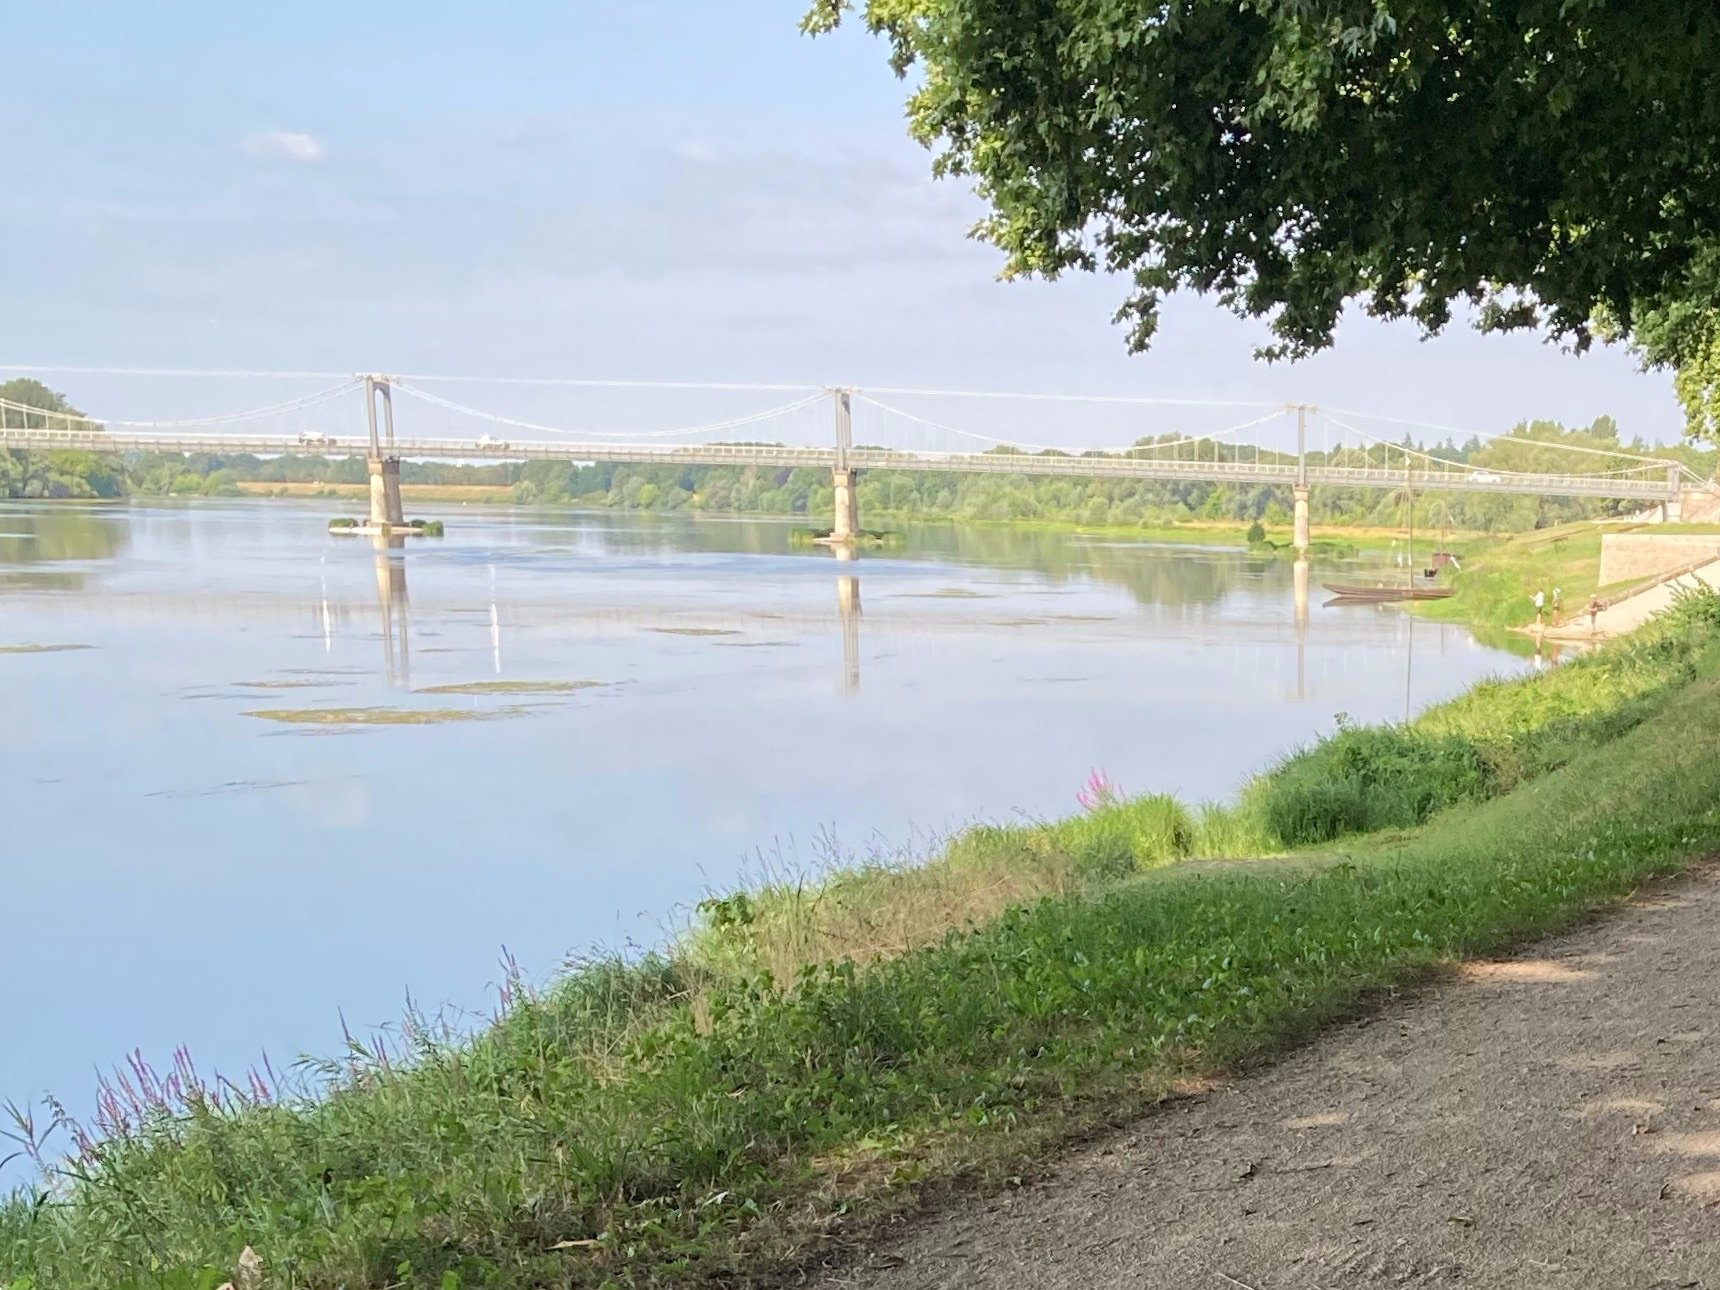 Dans le cadre de la gestion du Val de Loire Patrimoine Mondial, le paysage "pittoresque" de la traversée de Châteauneuf-sur-Loire est désormais protégé contre toute dégradation./LP/Christine Berkovicius